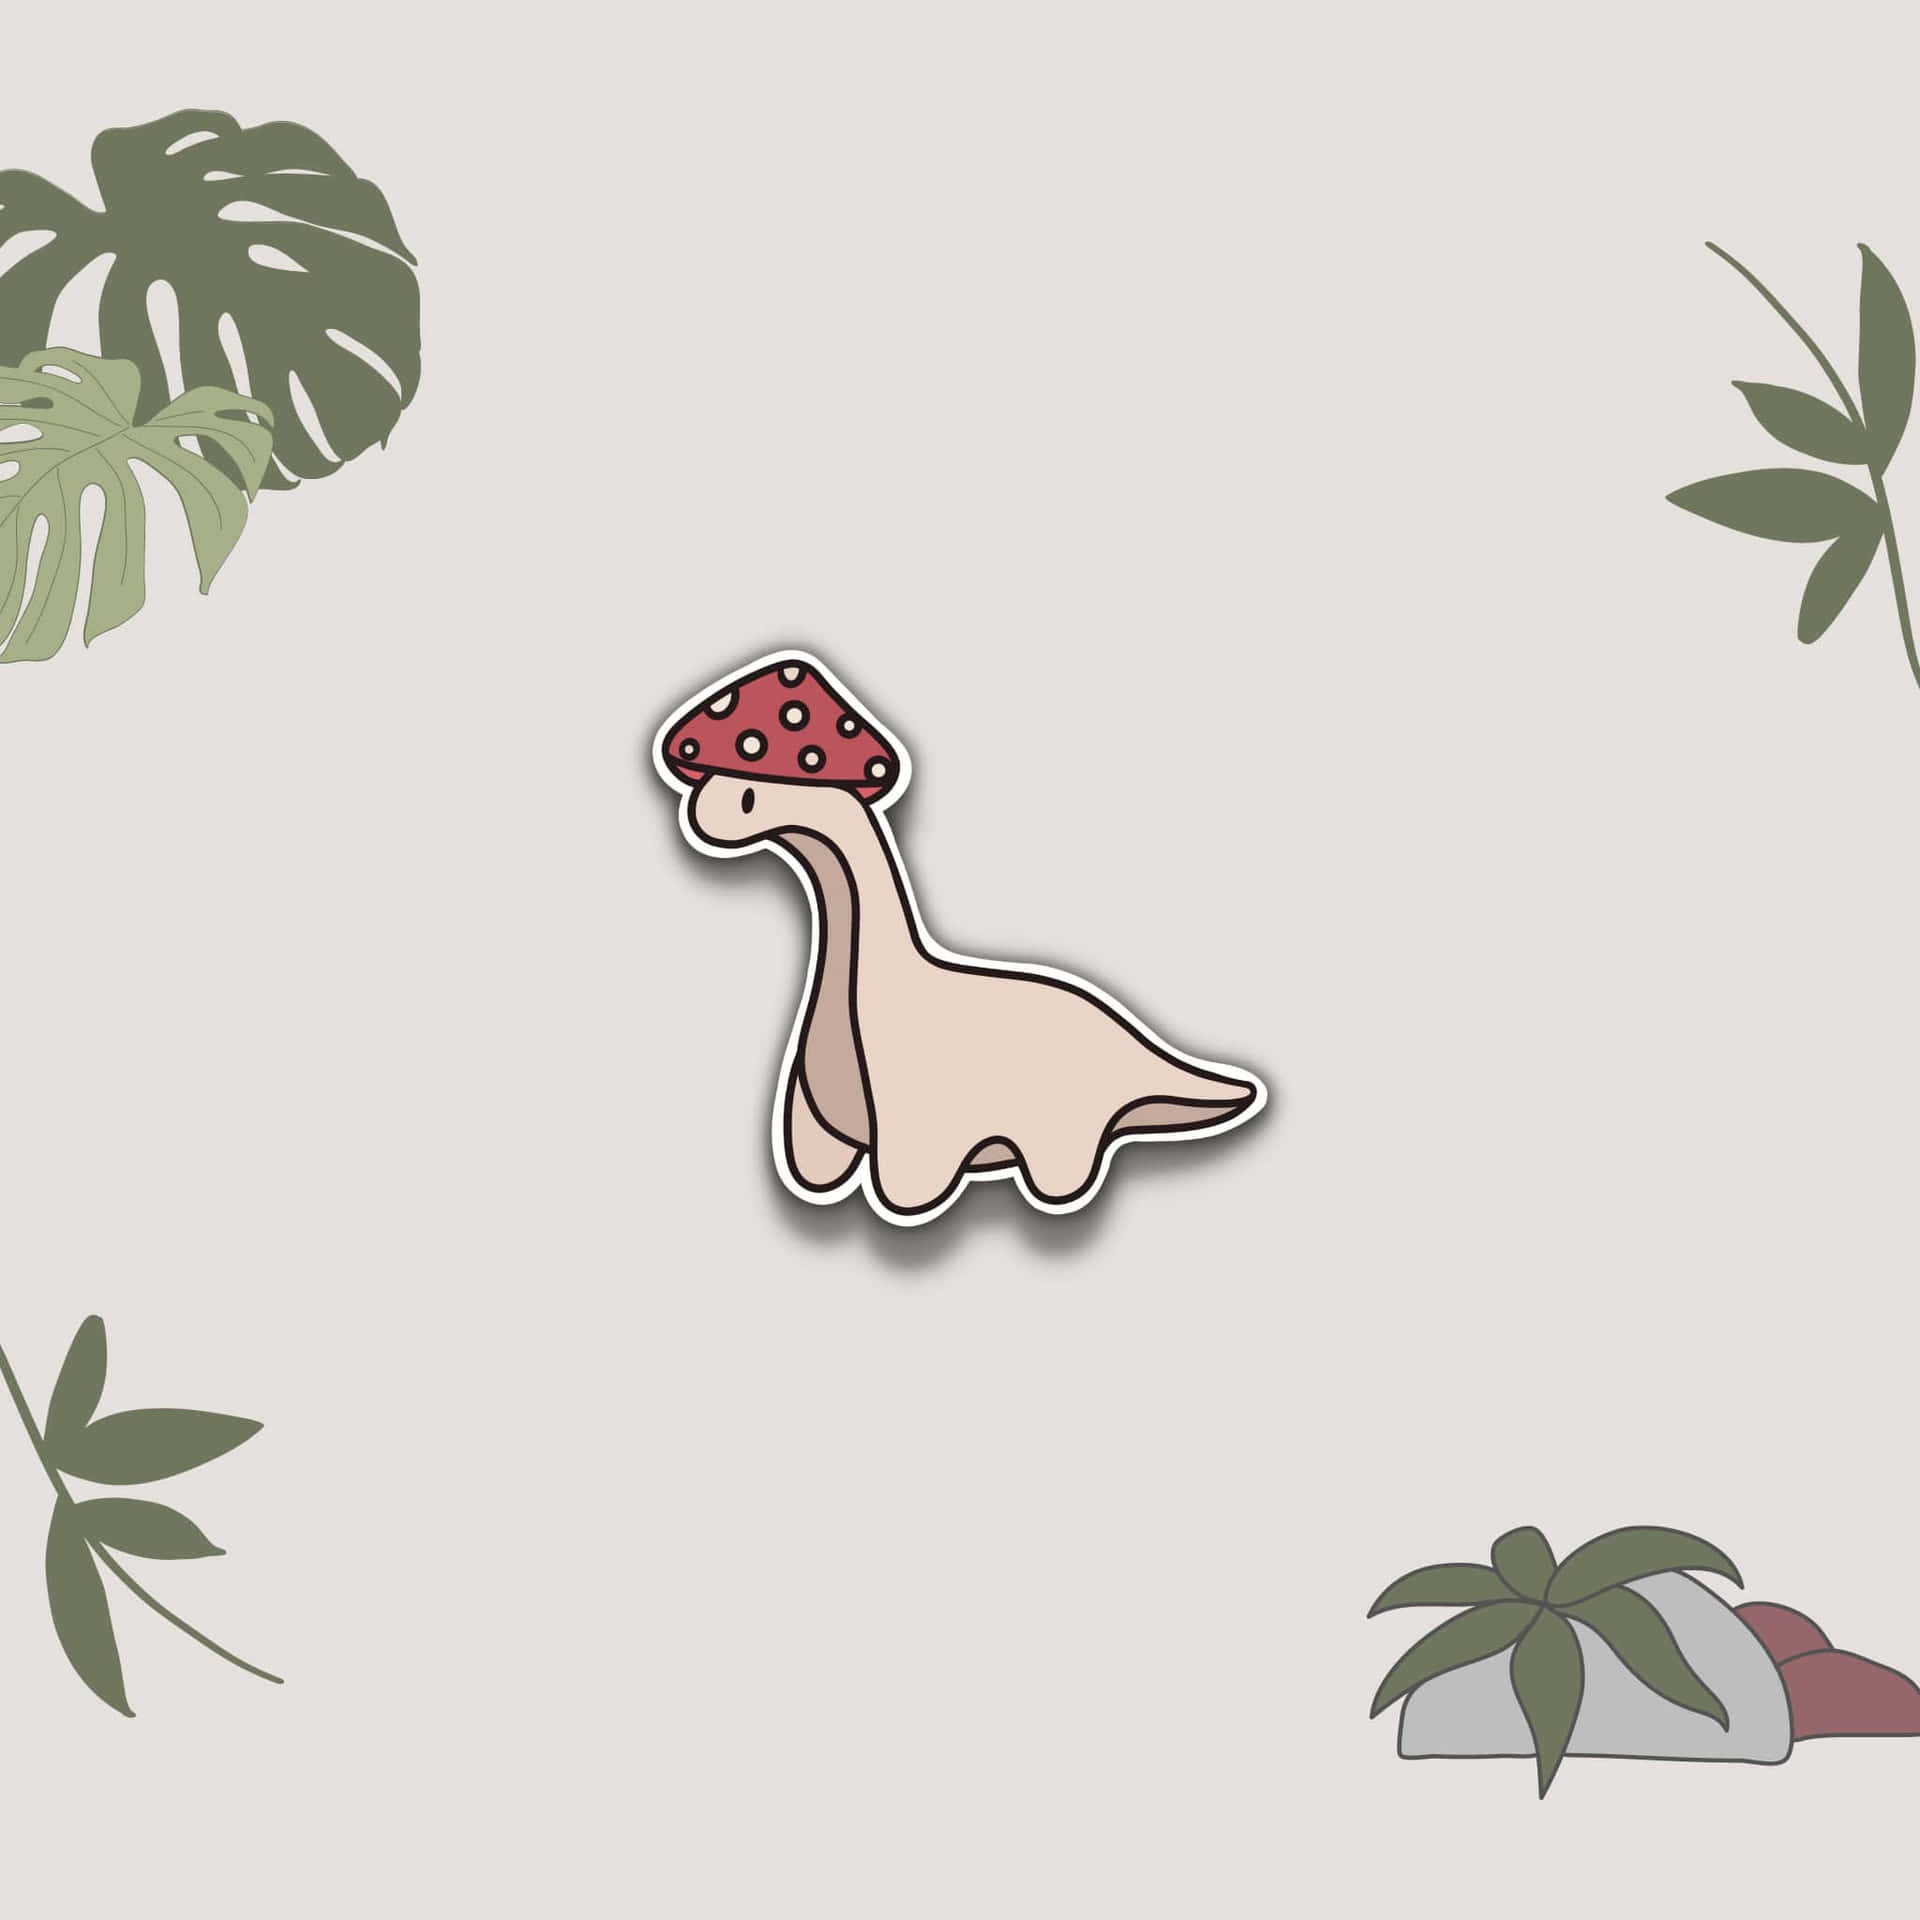 Cute Dinosaur Mushroom Hat Illustration Wallpaper